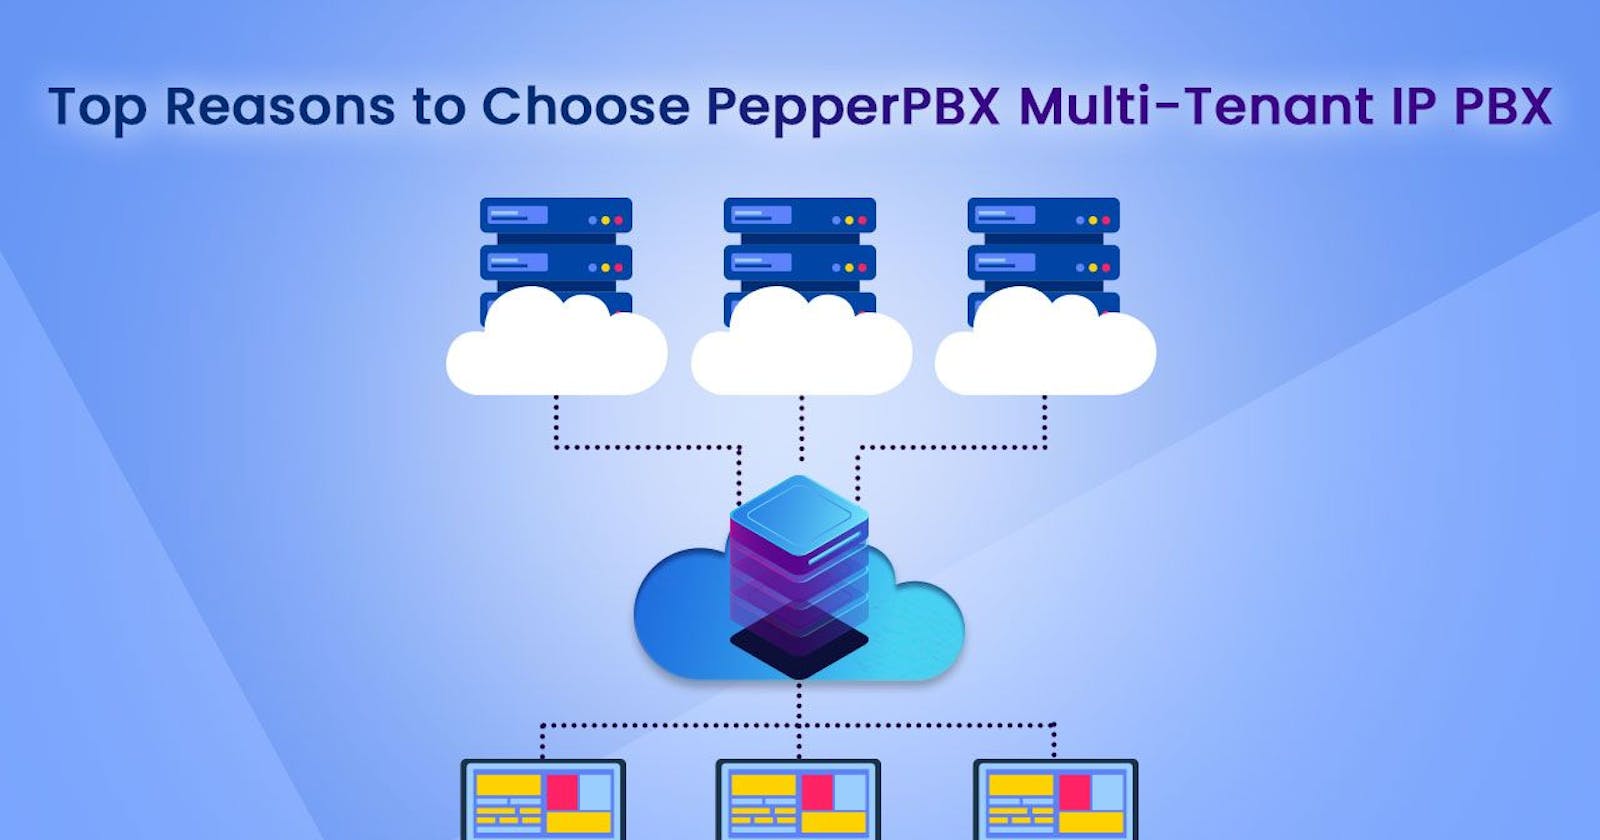 Top Reasons to Choose PepperPBX Multi-Tenant IP PBX